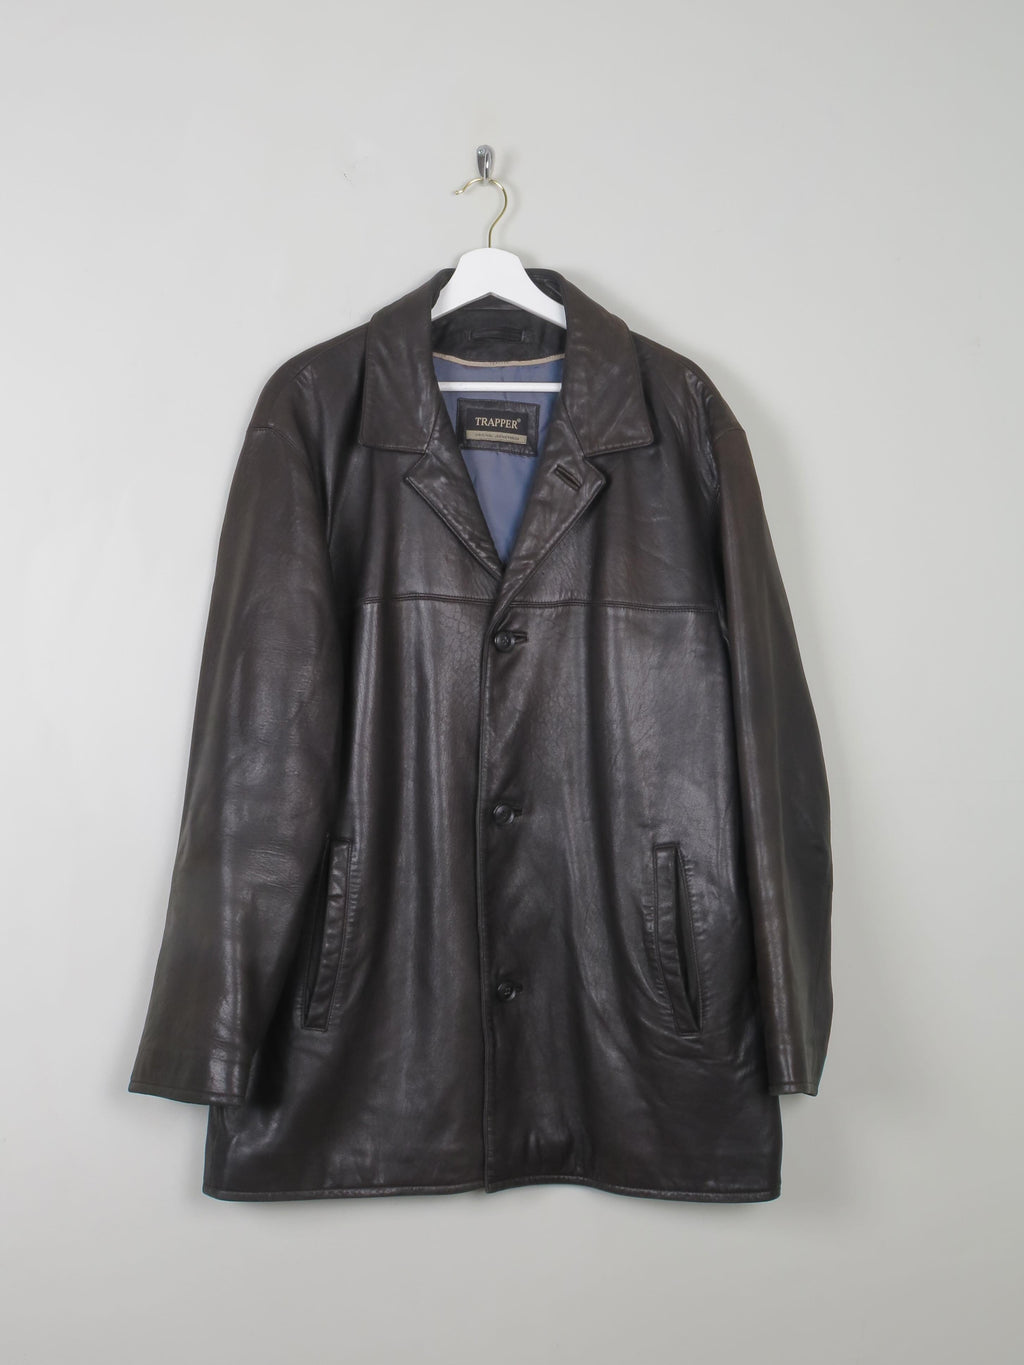 Men's Vintage Black Leather Jacket L - The Harlequin